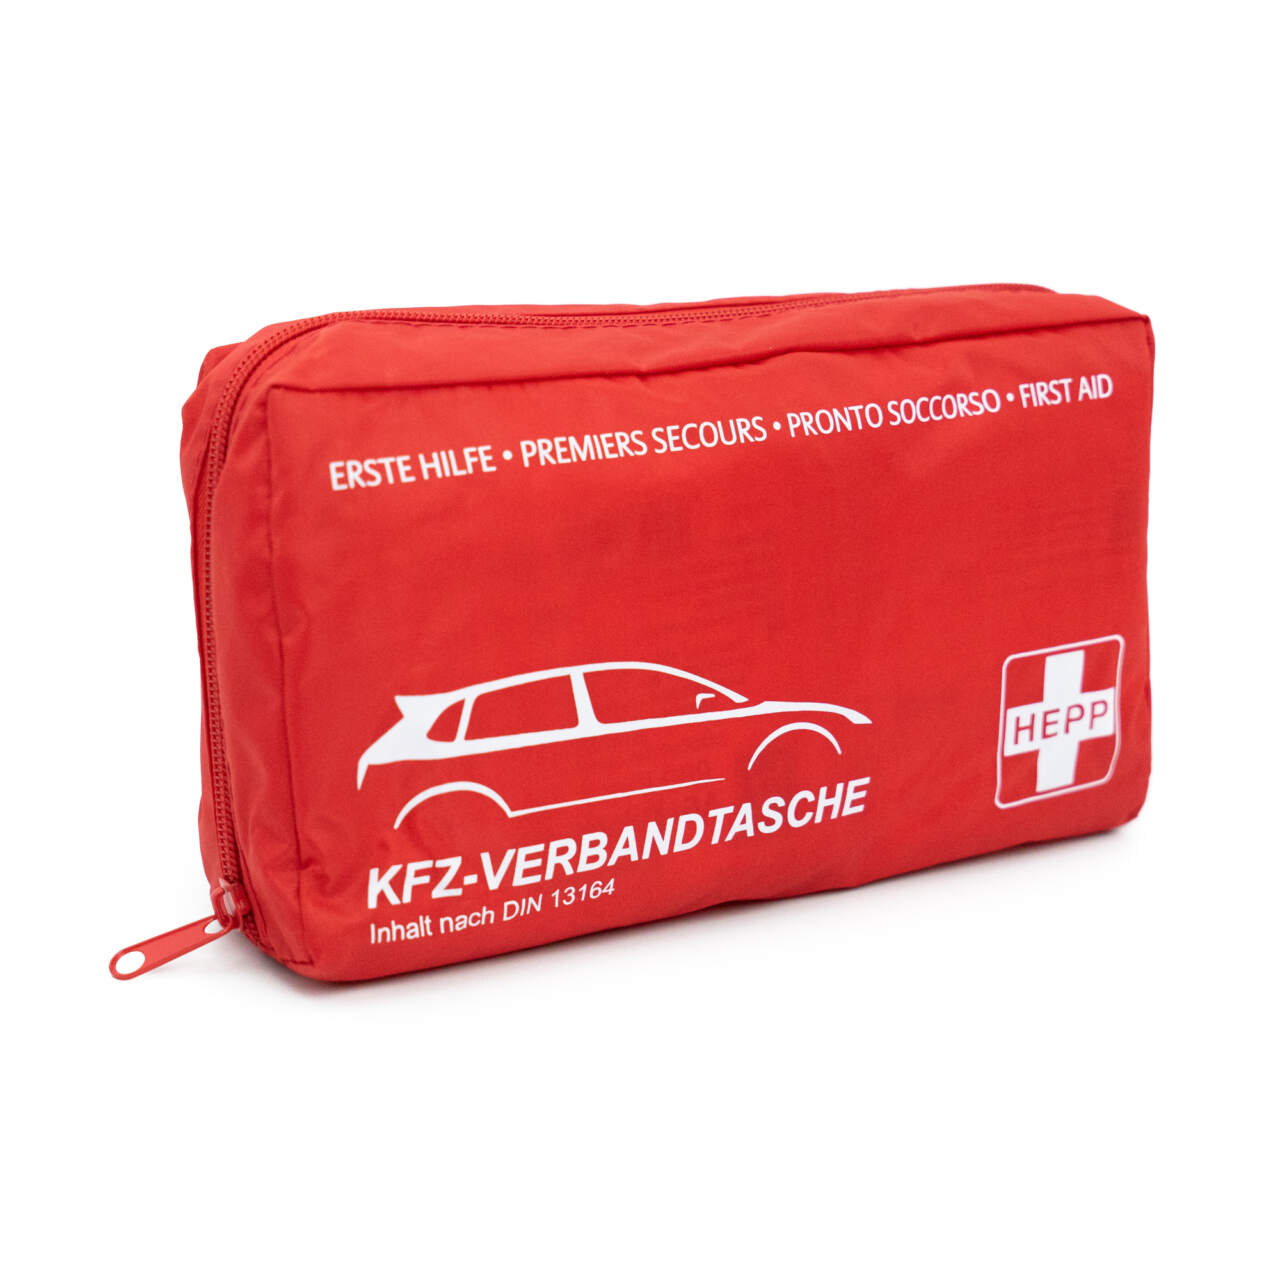 GRAMM medical KFZ-Verbandtasche Trio Farbe: rot, Inhalt nach DIN 13 164:2014